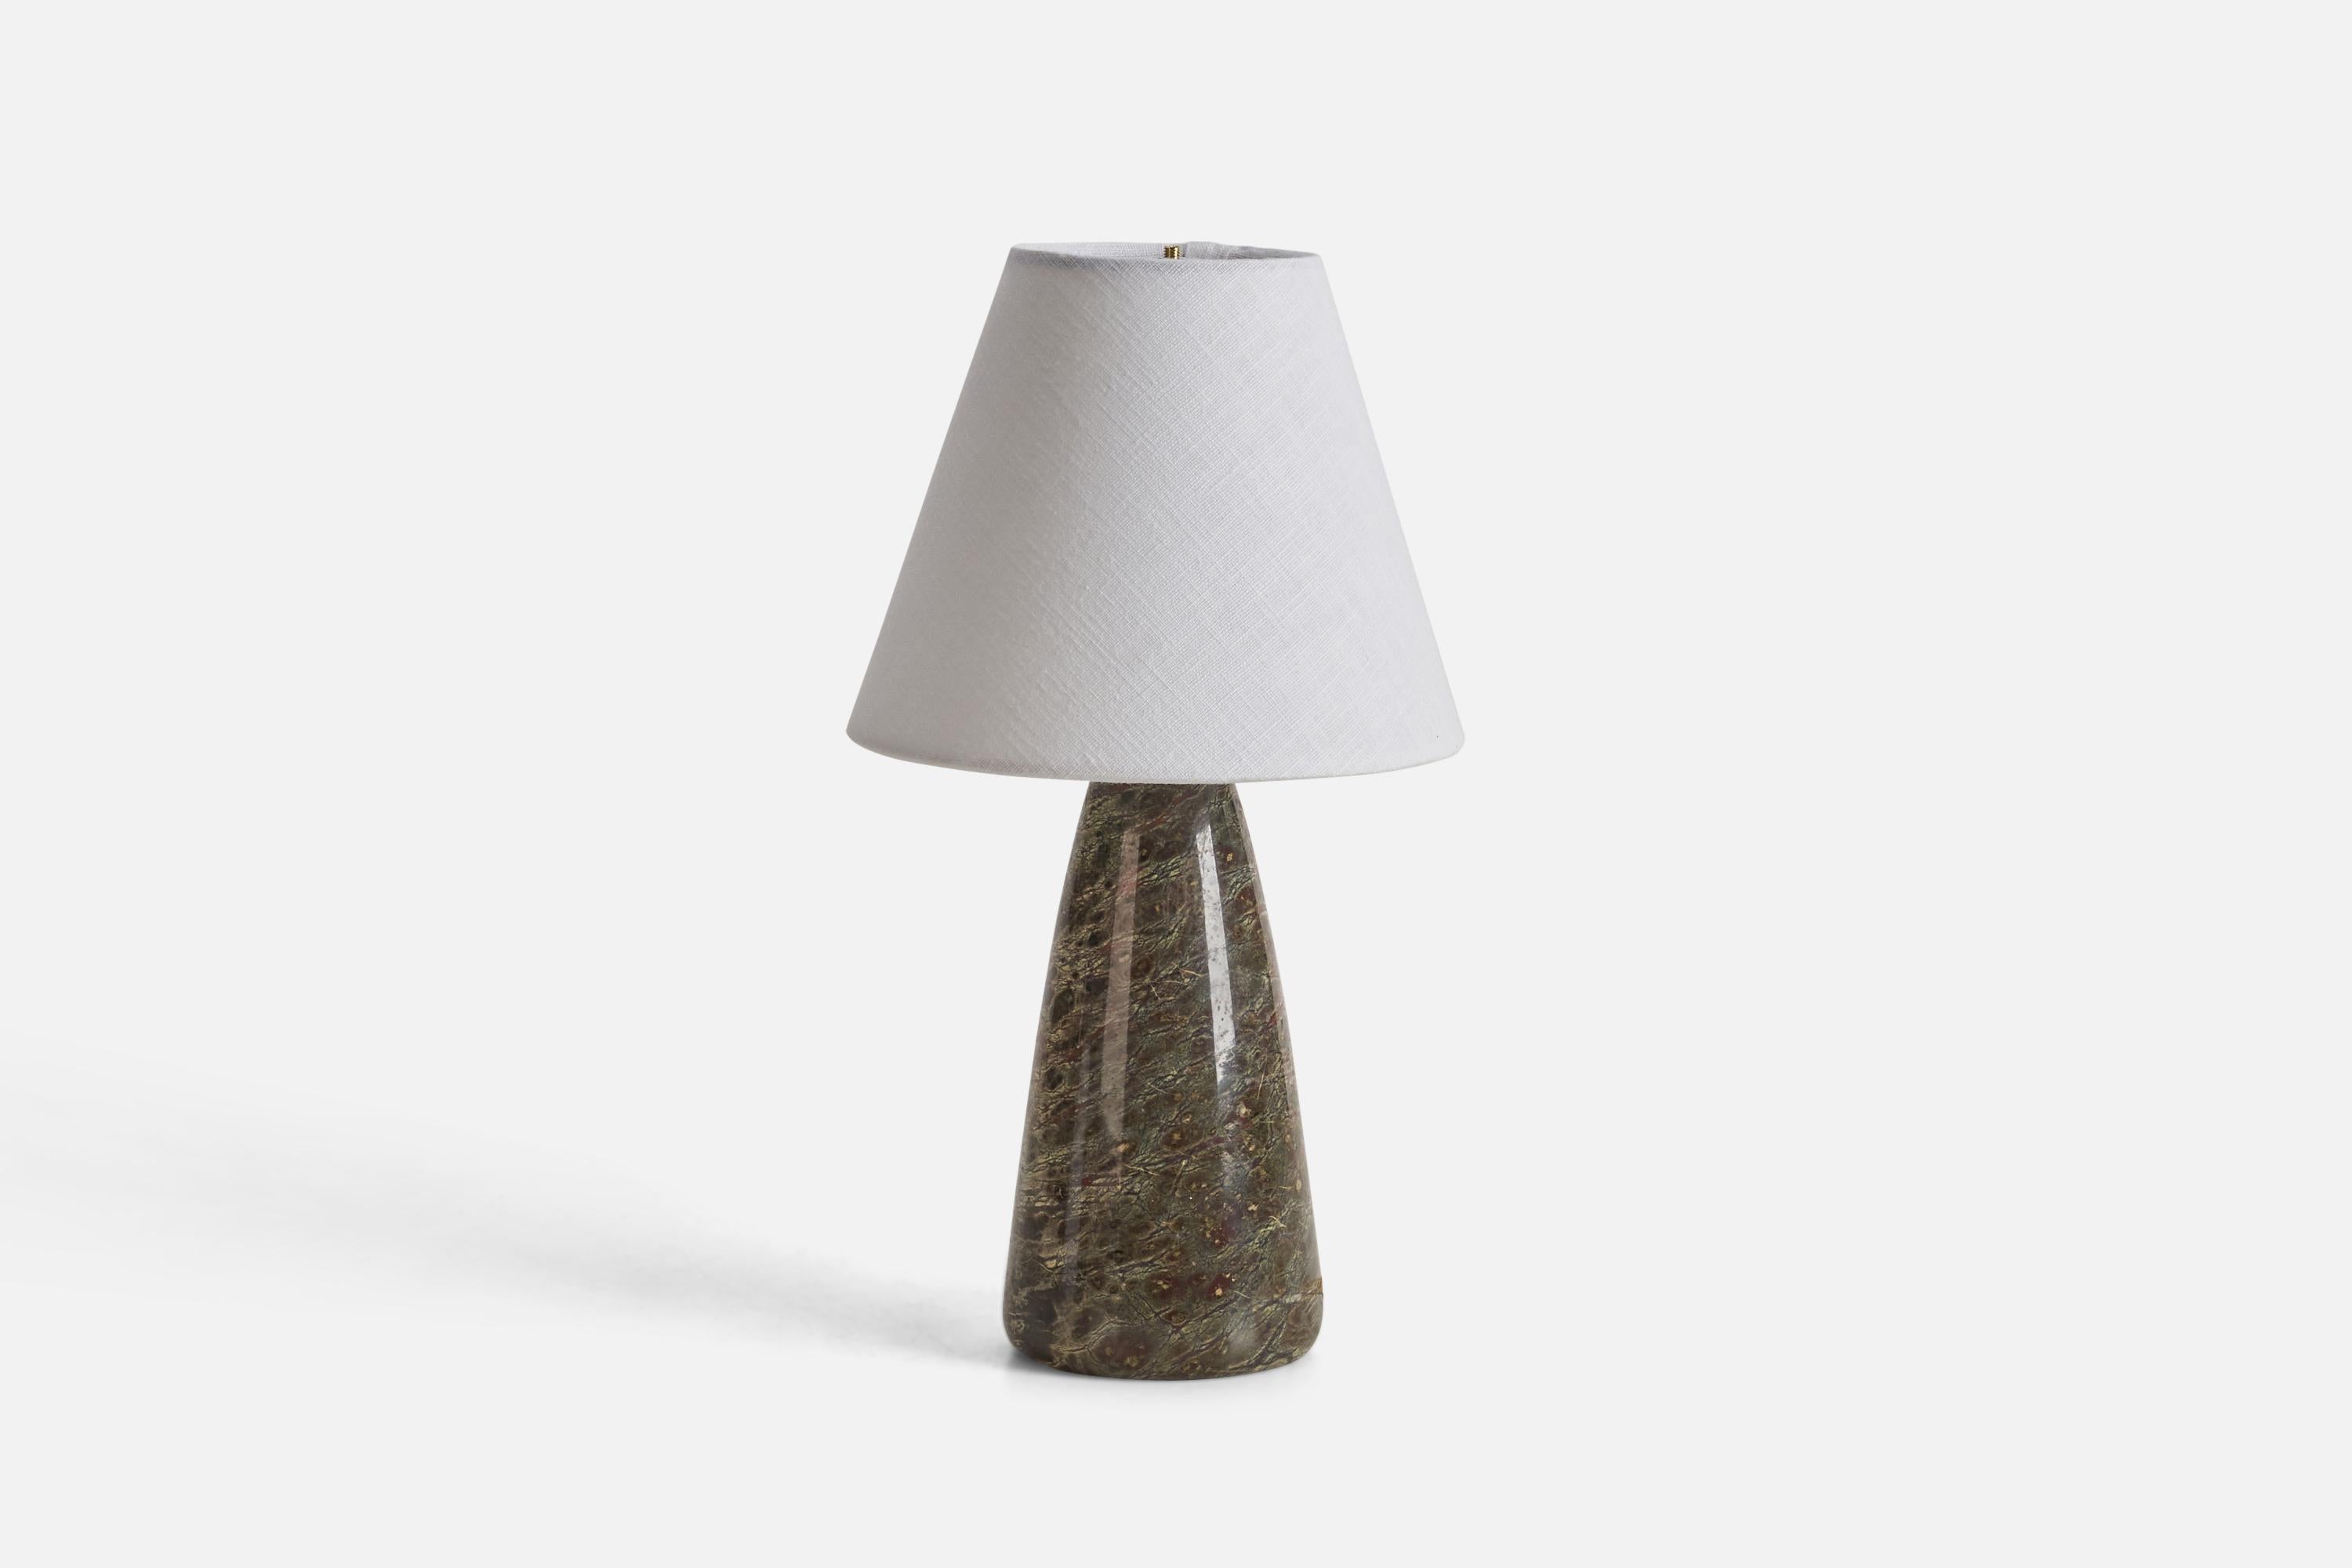 Lampe de table en pierre polie conçue et produite par un designer suédois, Suède, années 1970.

Dimensions de la lampe (pouces) : 10.68 x 4.2 x 4.2 (Hauteur x Largeur x Profondeur)
Dimensions de l'abat-jour (pouces) : 4 x 8 x 6.5 (Diamètre supérieur